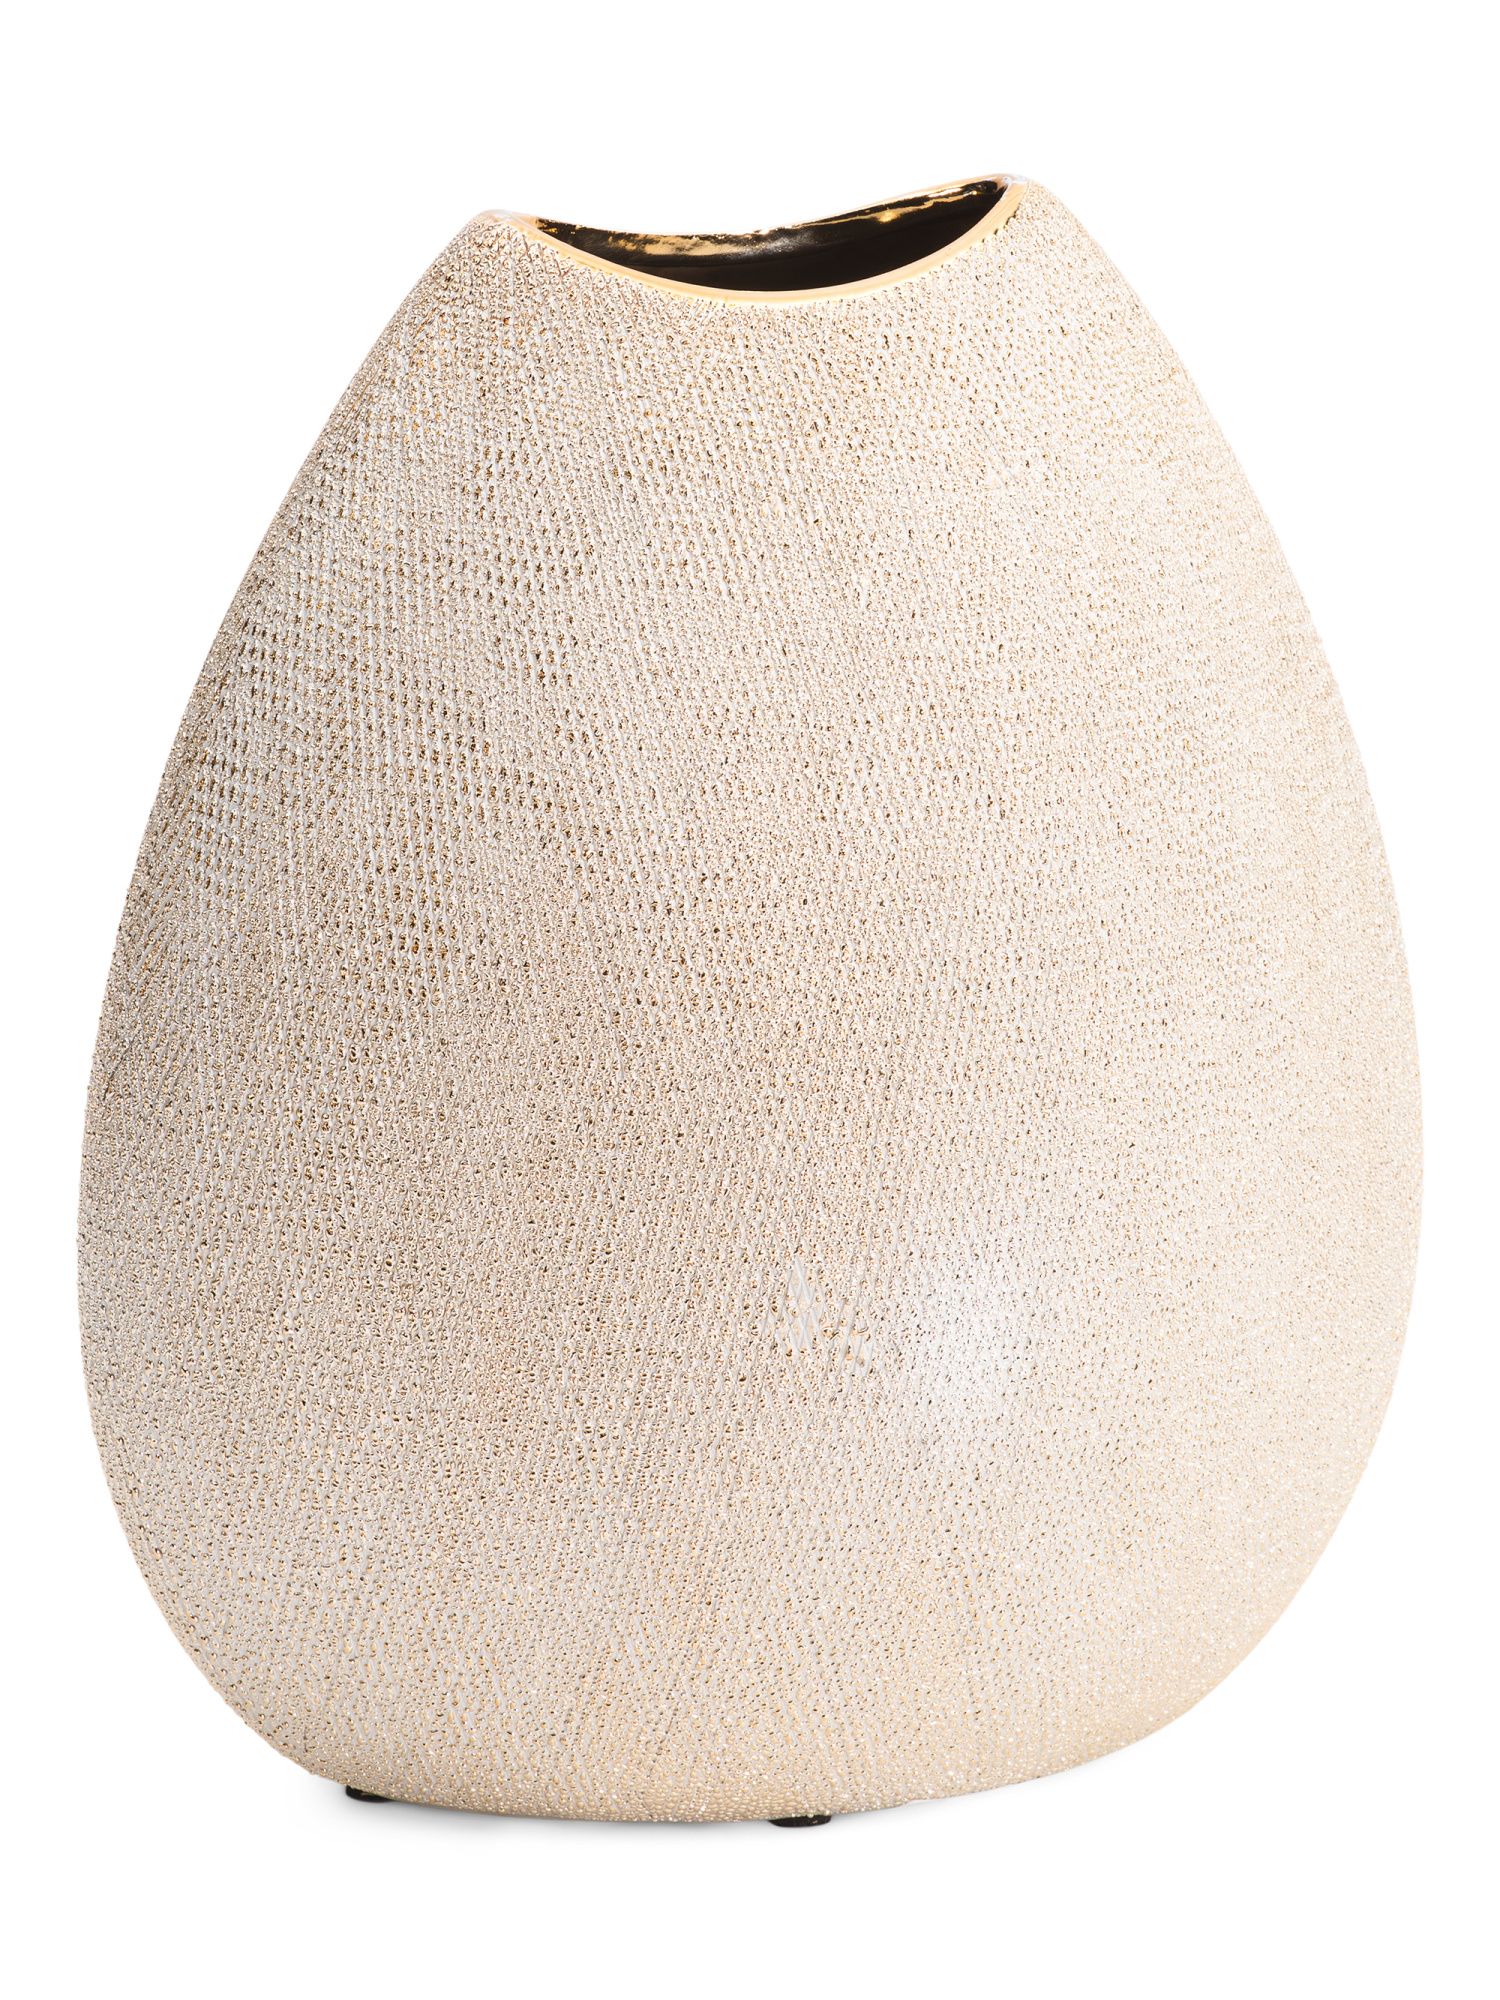 11in Ceramic Beaded Vase | TJ Maxx